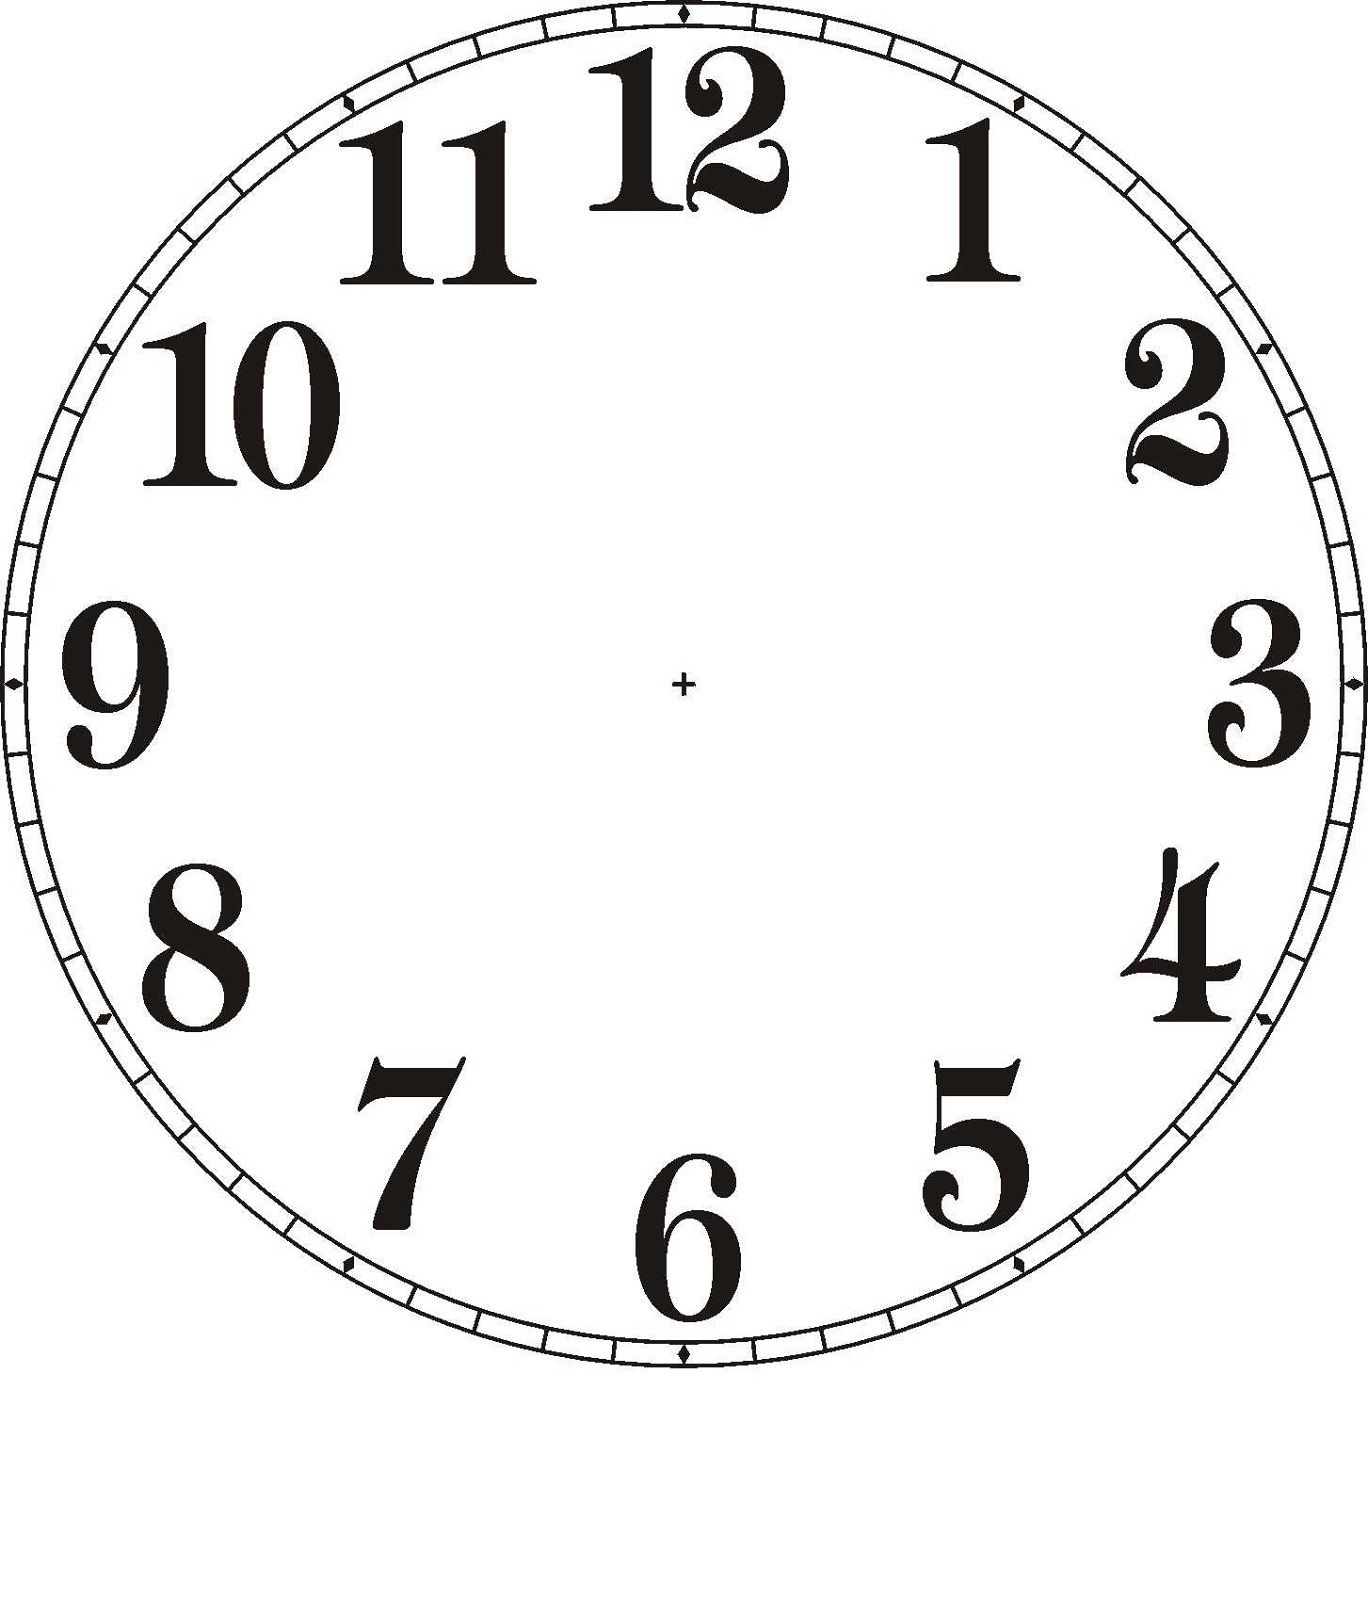 Clock Face Printable For Media Reading Clock Relojes De Pared N meros De Reloj Reloj